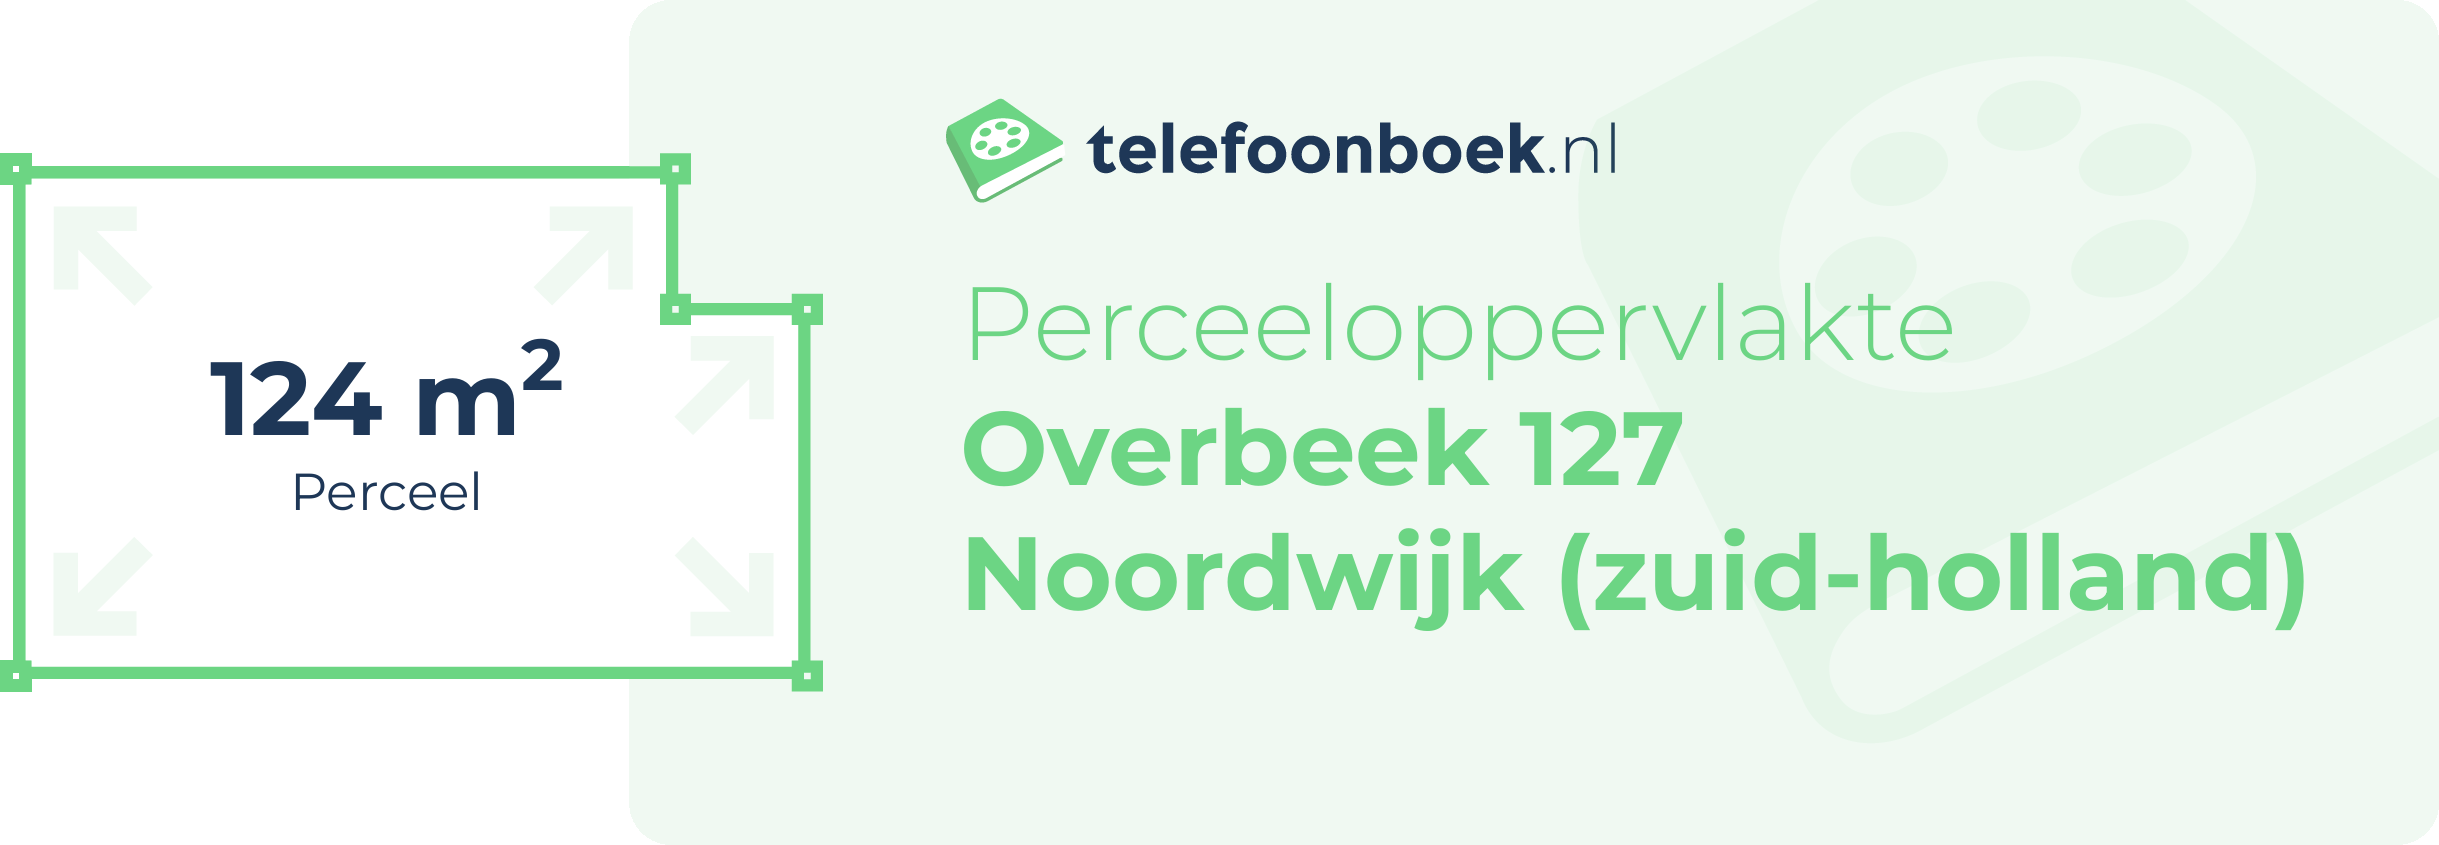 Perceeloppervlakte Overbeek 127 Noordwijk (Zuid-Holland)